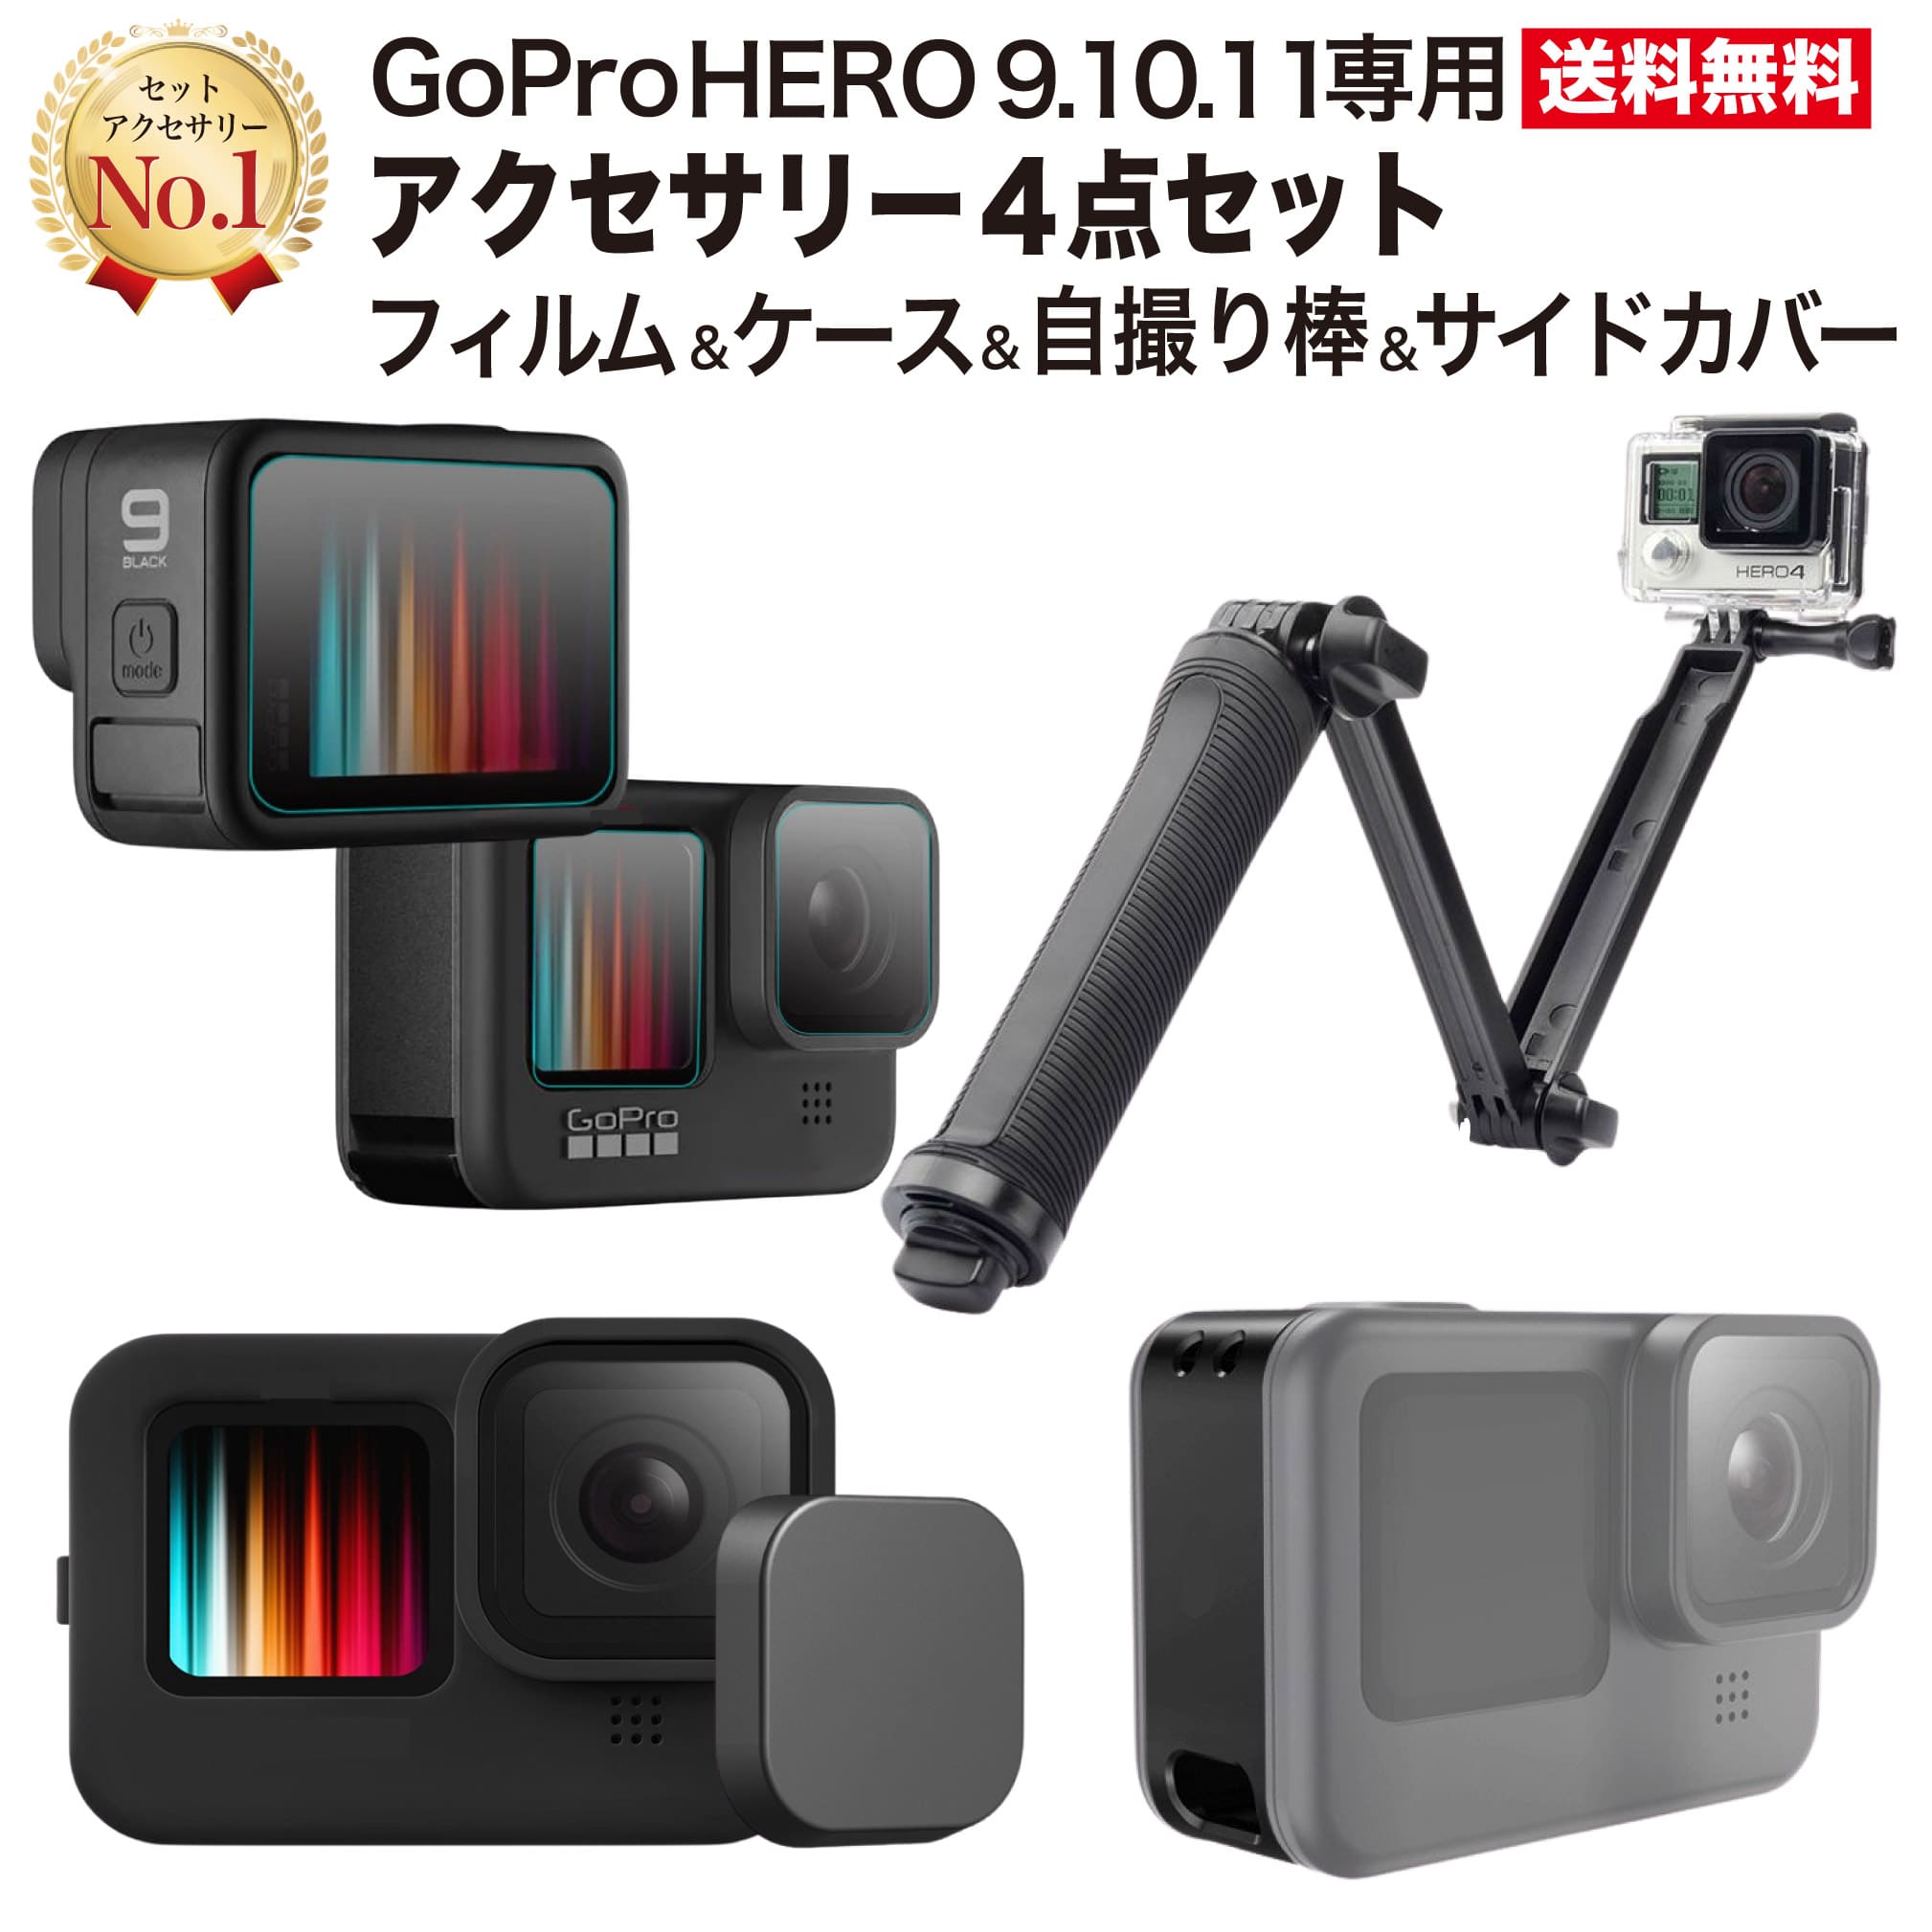 お手軽価格で贈りやすい GoPro HERO8 Black対応 シリコンカバー ガラス